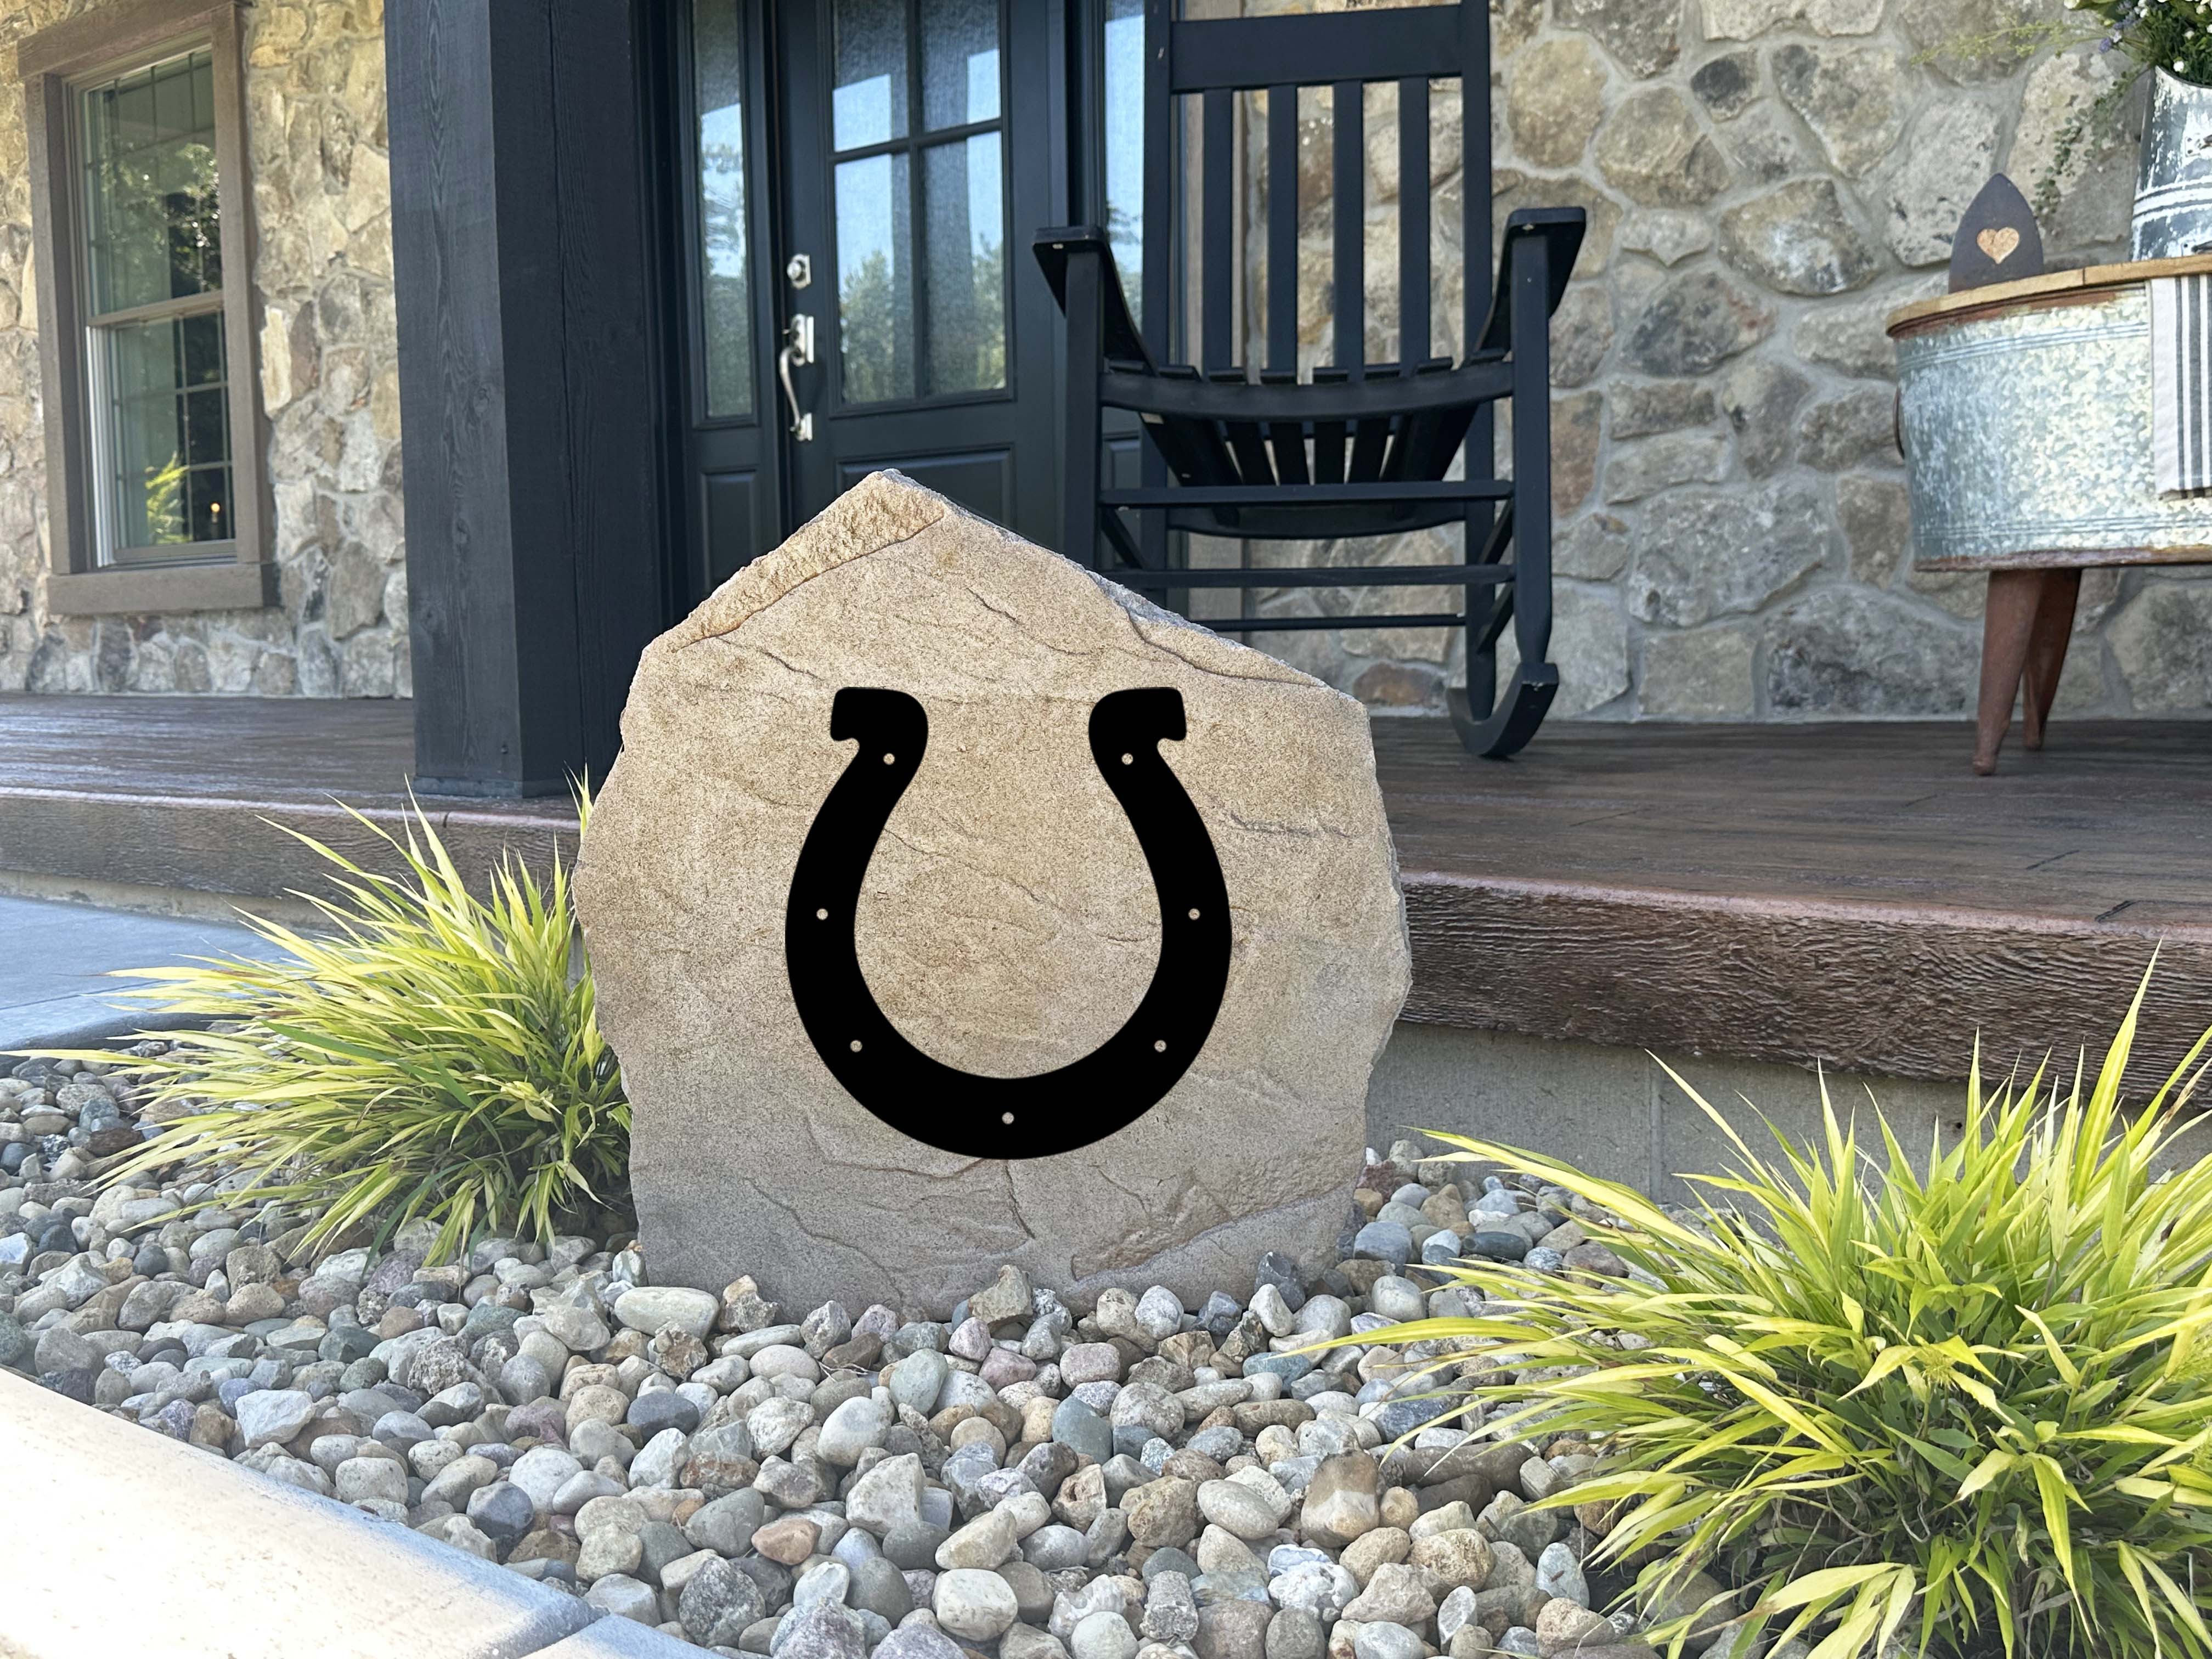 Indianapolis Colts Design-A-Stone Landscape Art